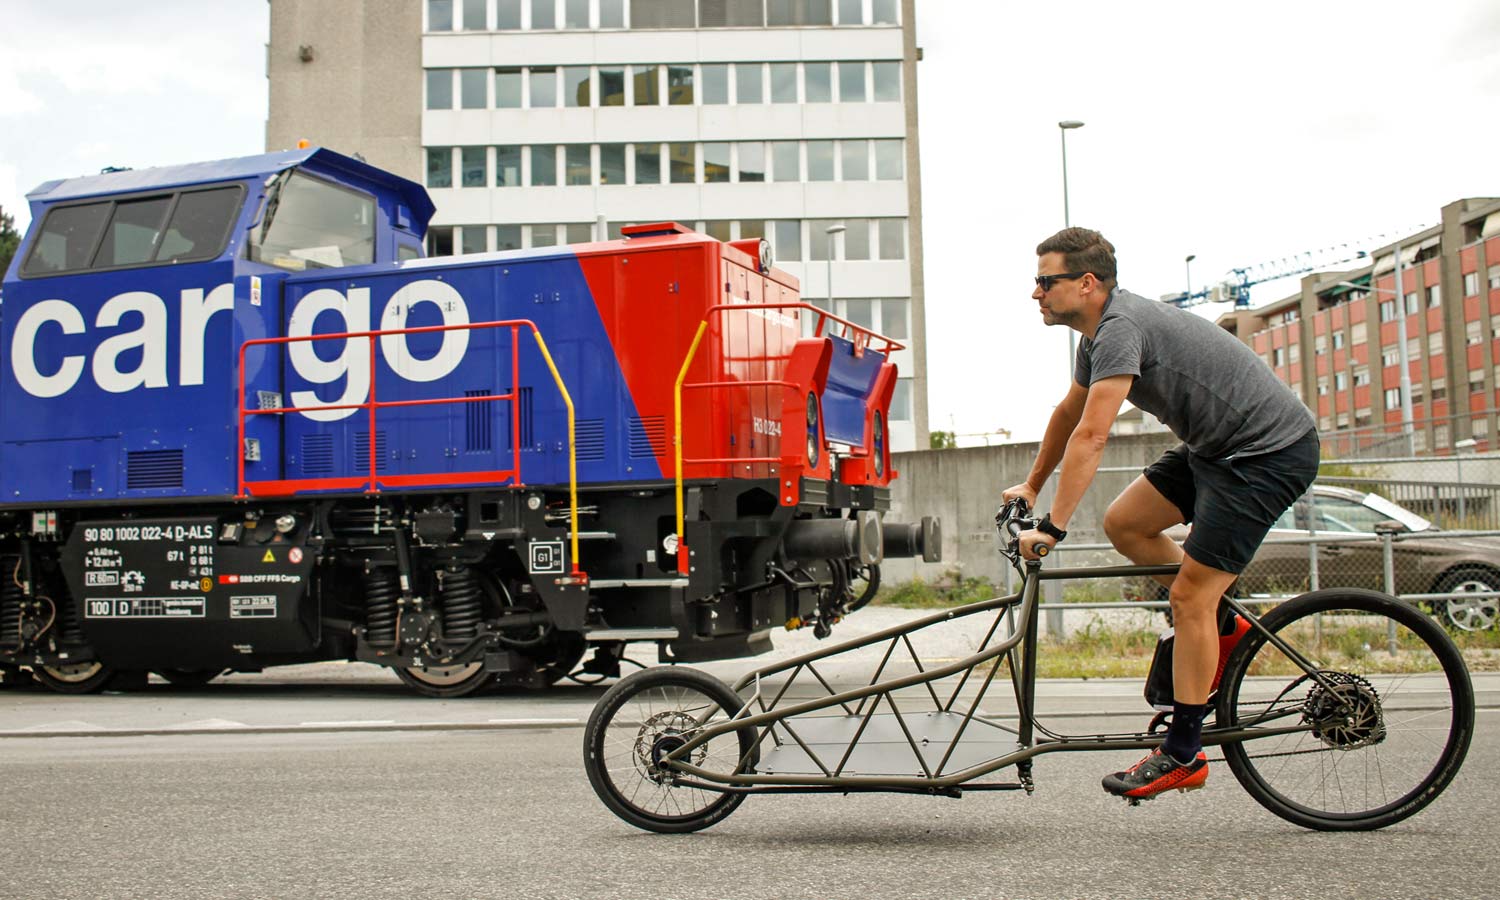 Obst&Gemüse + Elian Cycles Ultimate e-Cargo Obst&Gemuese+Elian limited edition e-bike custom cargo bike